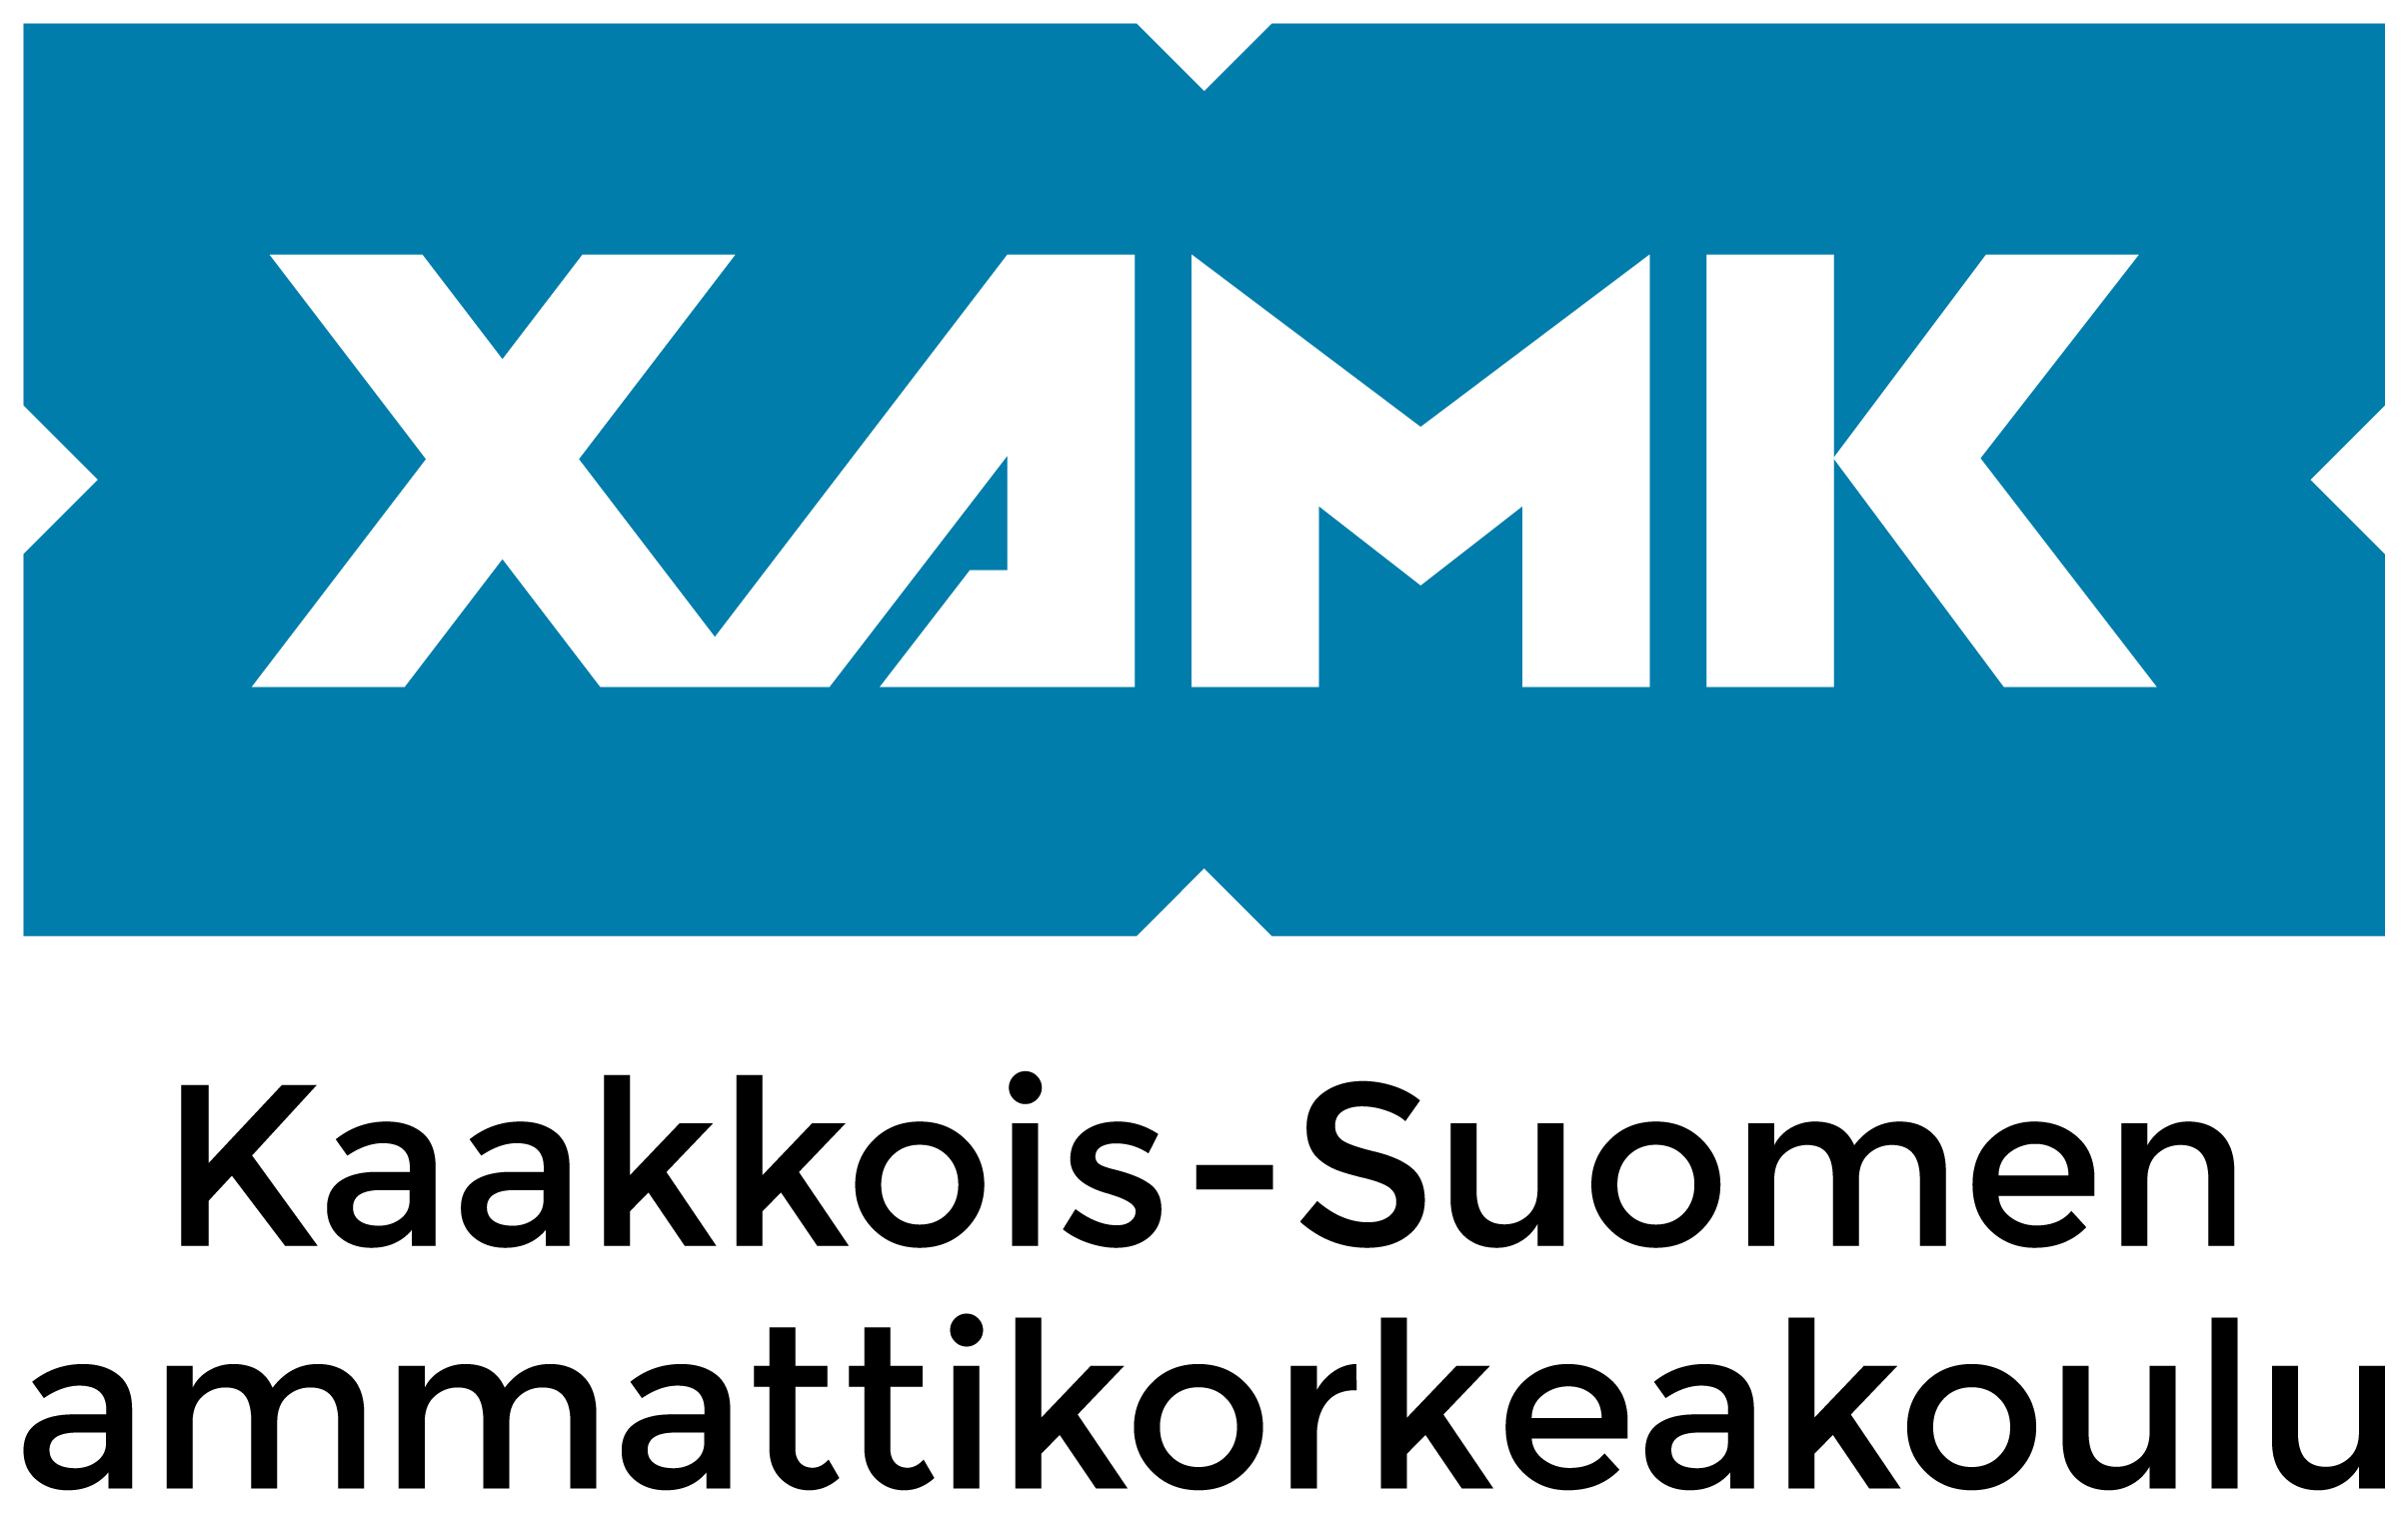 Xamk-logo